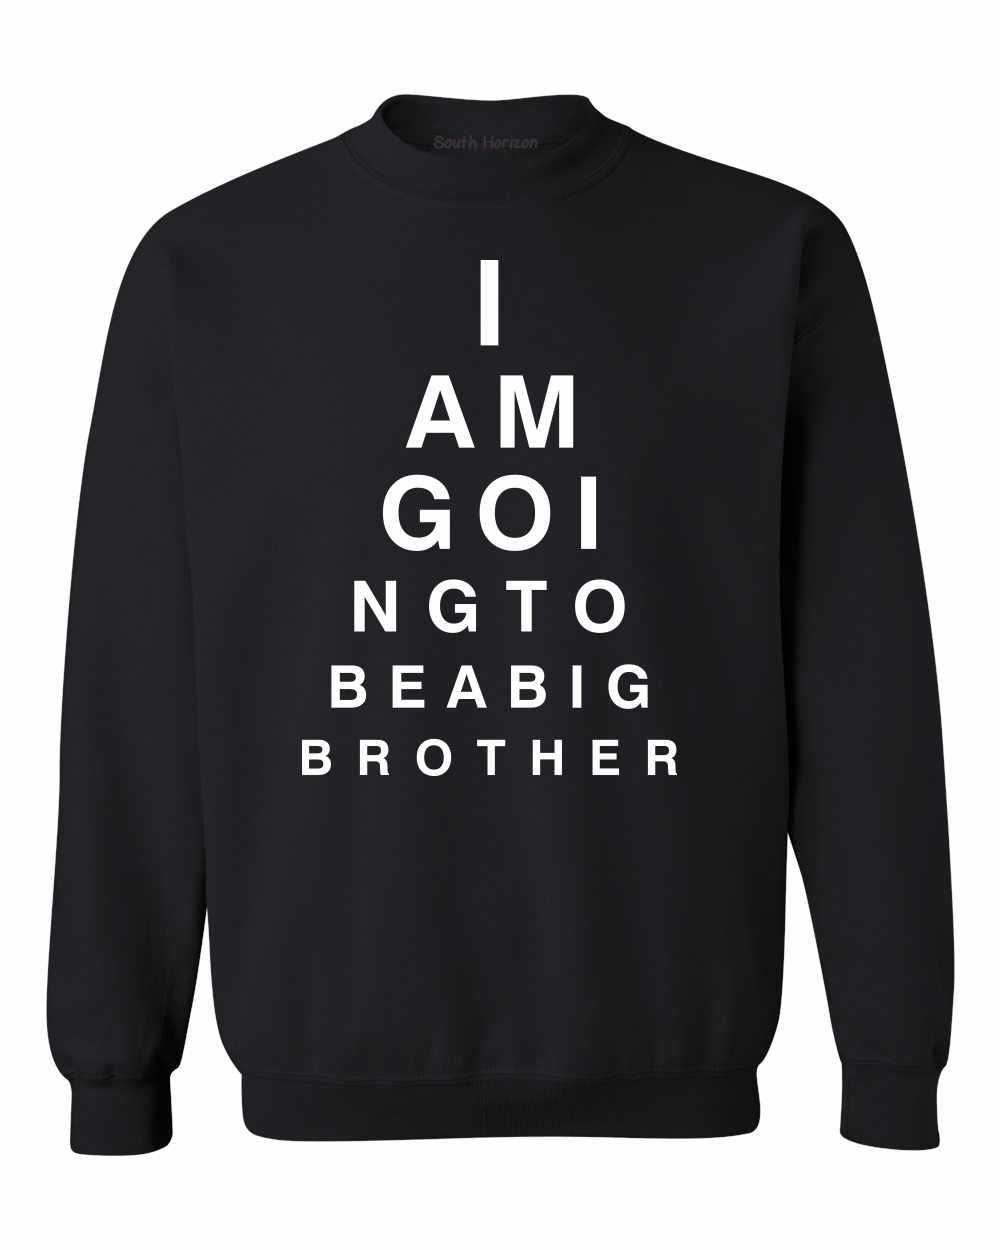 I AM GOING TO BE BIG BROTHER EYE CHART on SweatShirt (#1007-11)